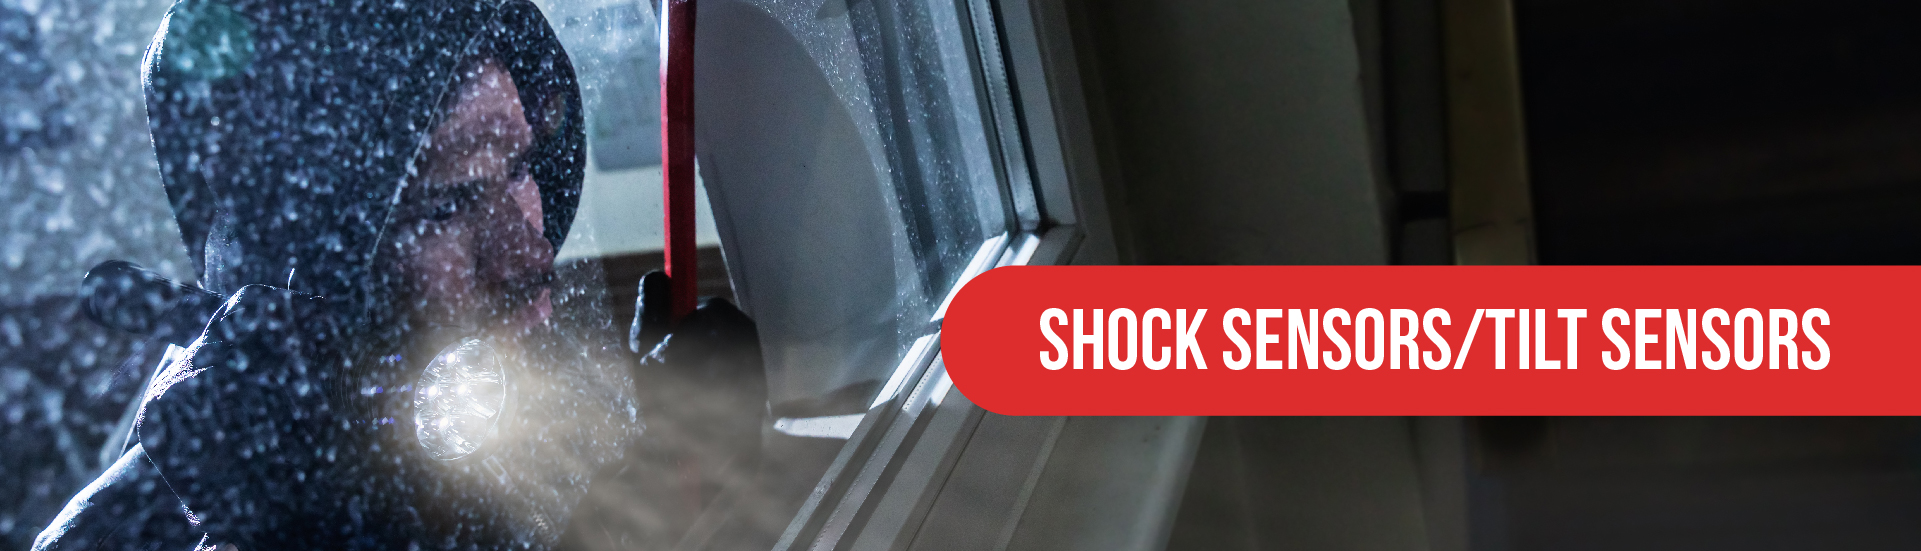 burglar peeping inside window, banner reads: shock sensor, tilt sensor